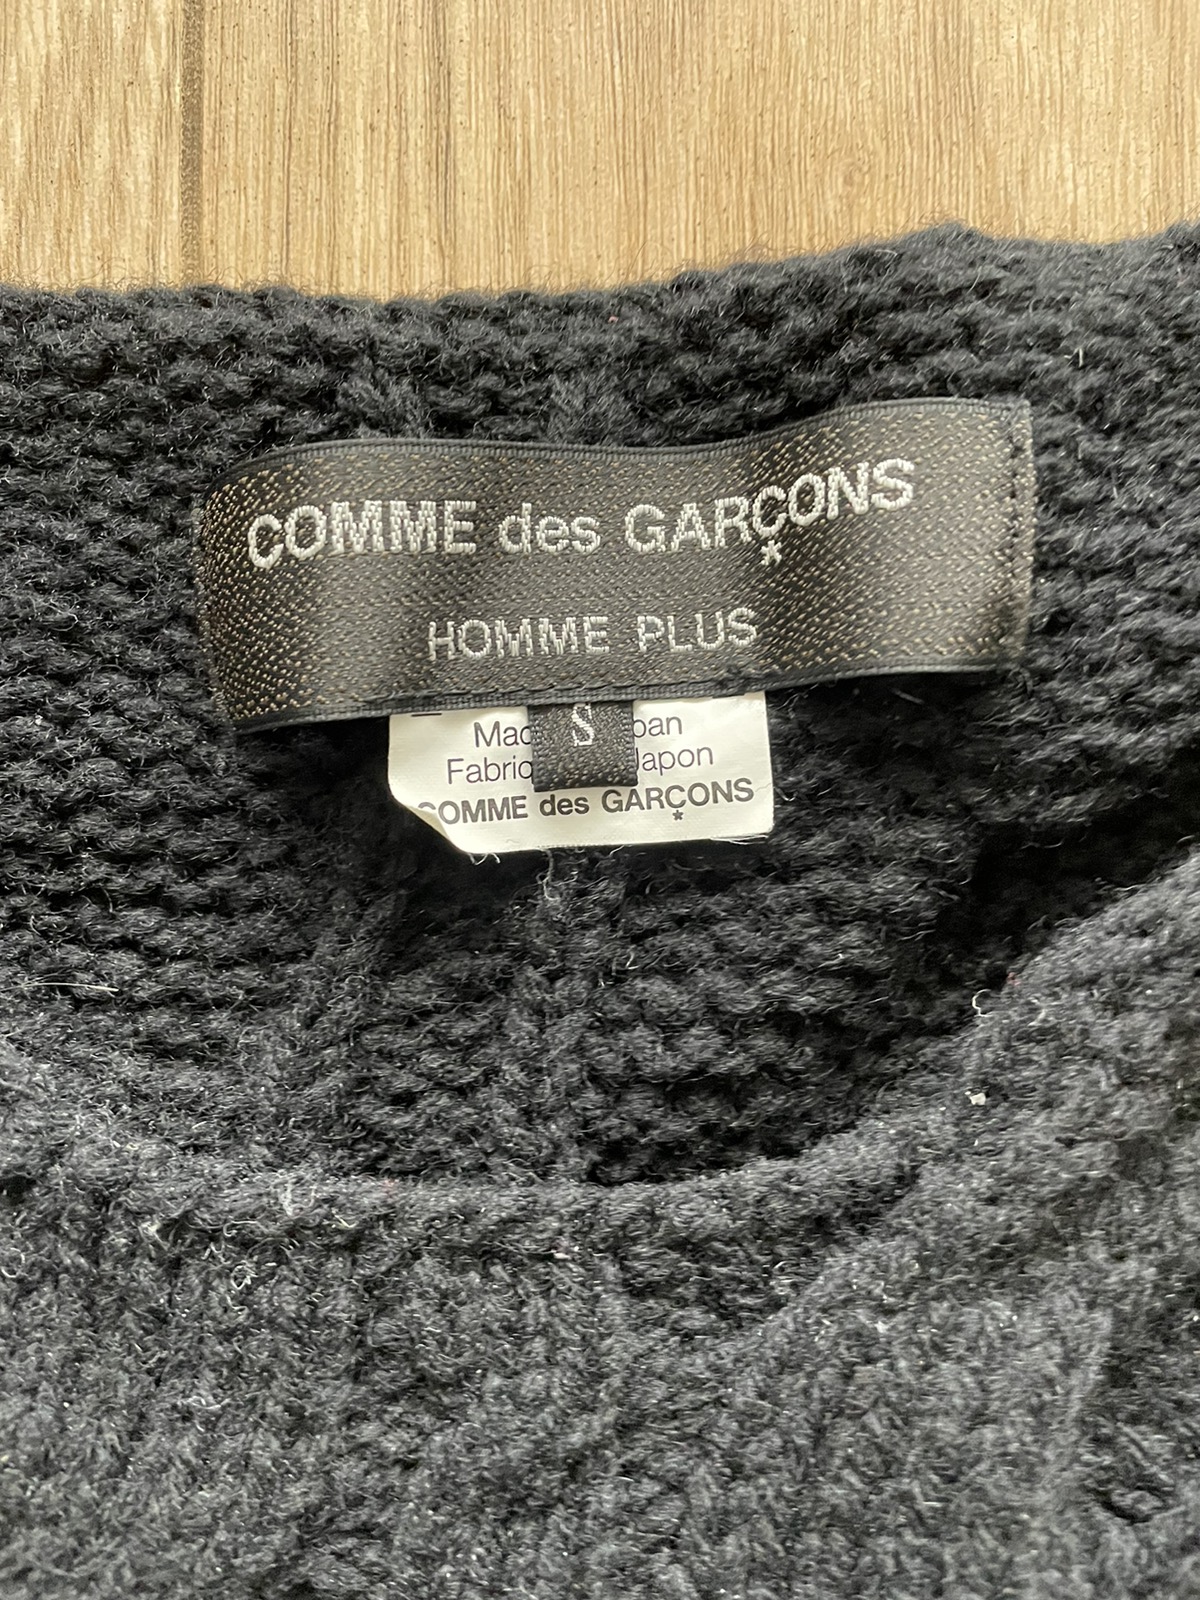 Comme des Garcons Homme Plus two pattern knit - 4